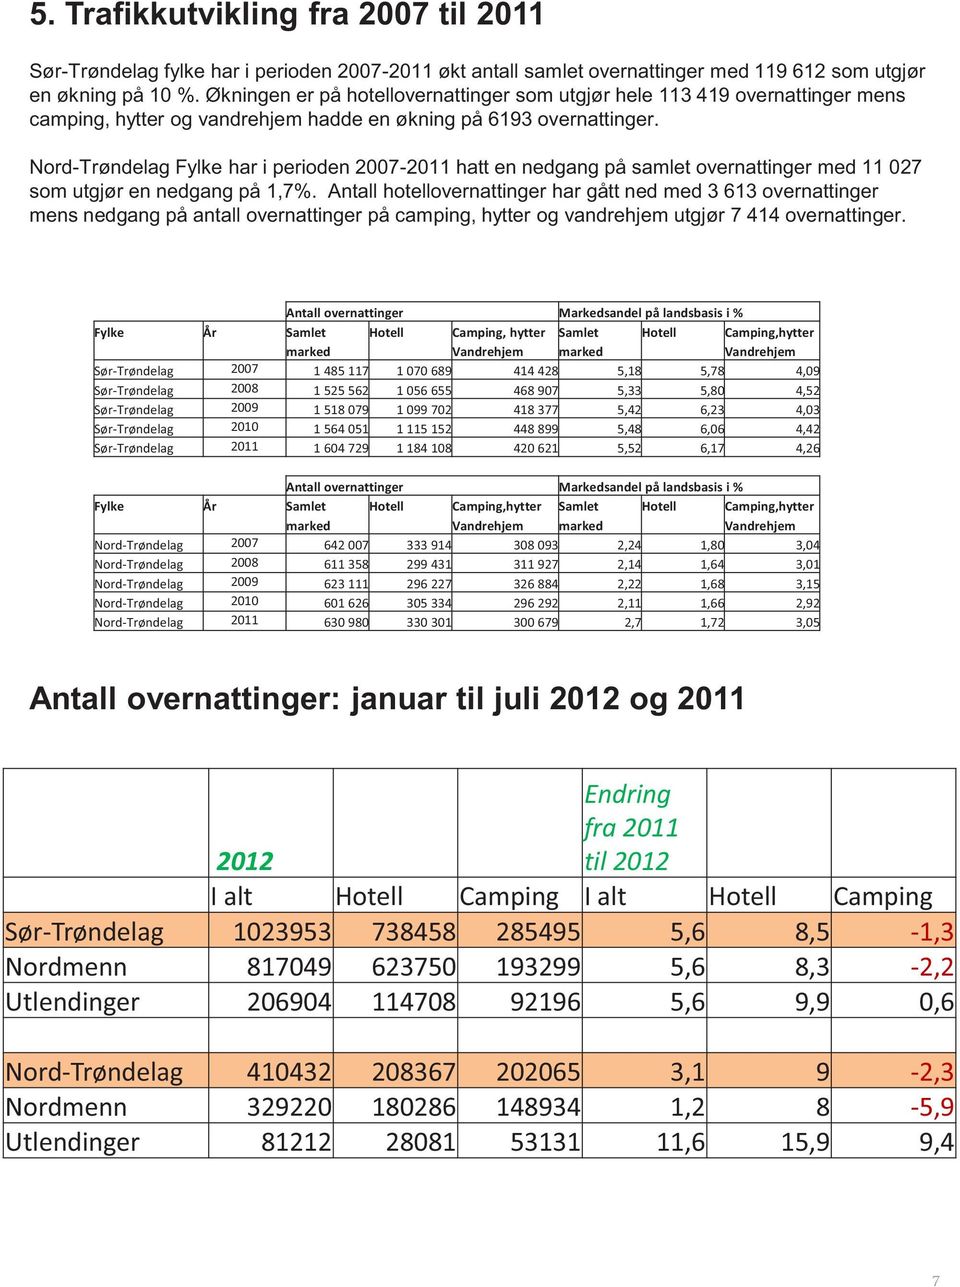 Nord-Trøndelag Fylke har i perioden 2007-2011 hatt en nedgang på samlet overnattinger med 11 027 som utgjør en nedgang på 1,7%.